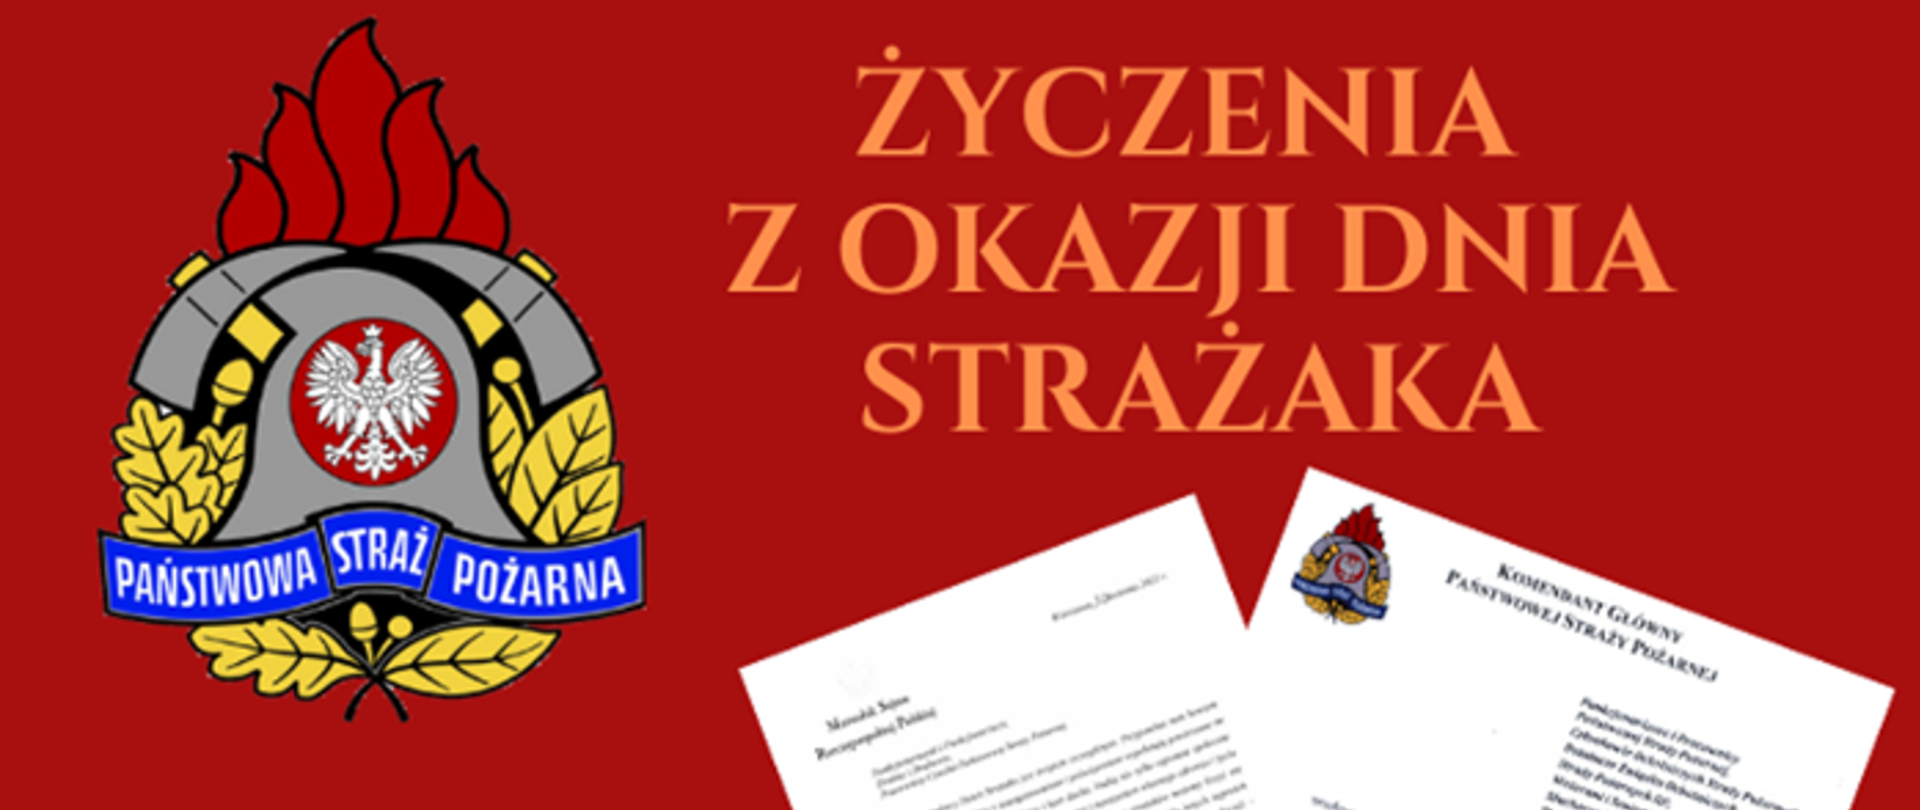 Życzenia Kierownictwa Komendy Głównej Państwowej Straży Pożarnej z okazji Dnia Strażaka 2023 r.